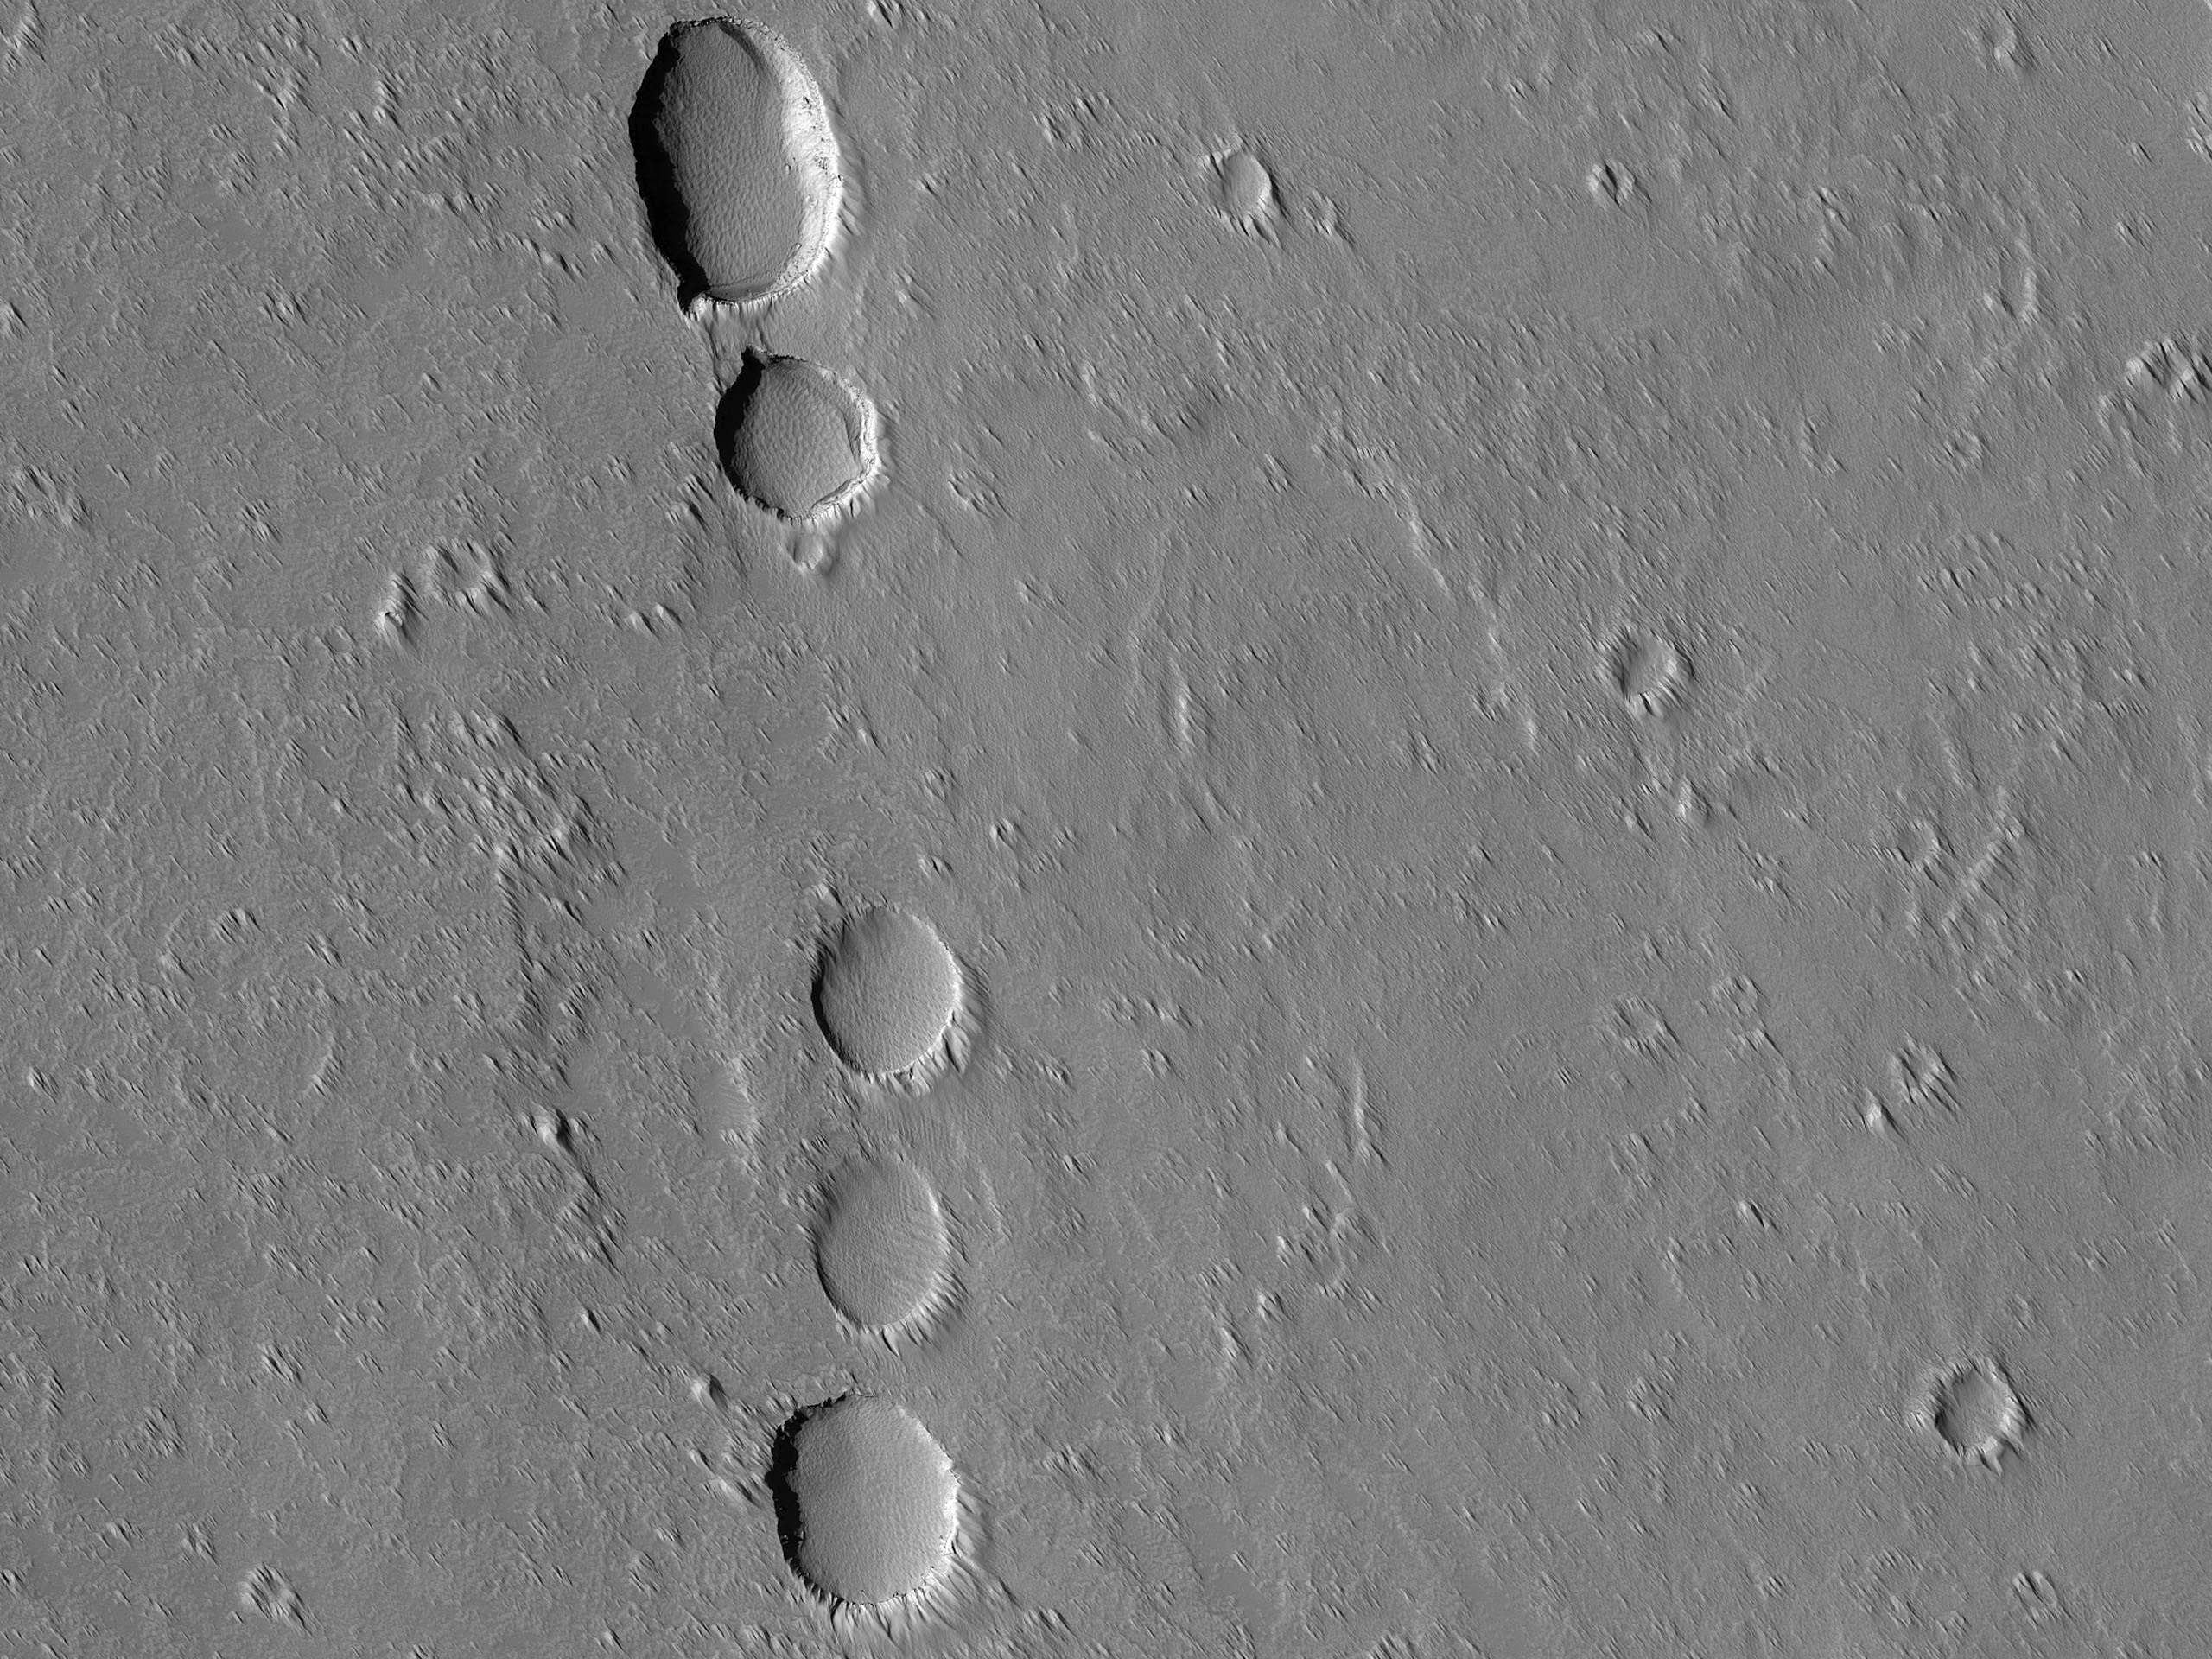 Cadena de cráteres de subsidencia al sur de Arsia Mons